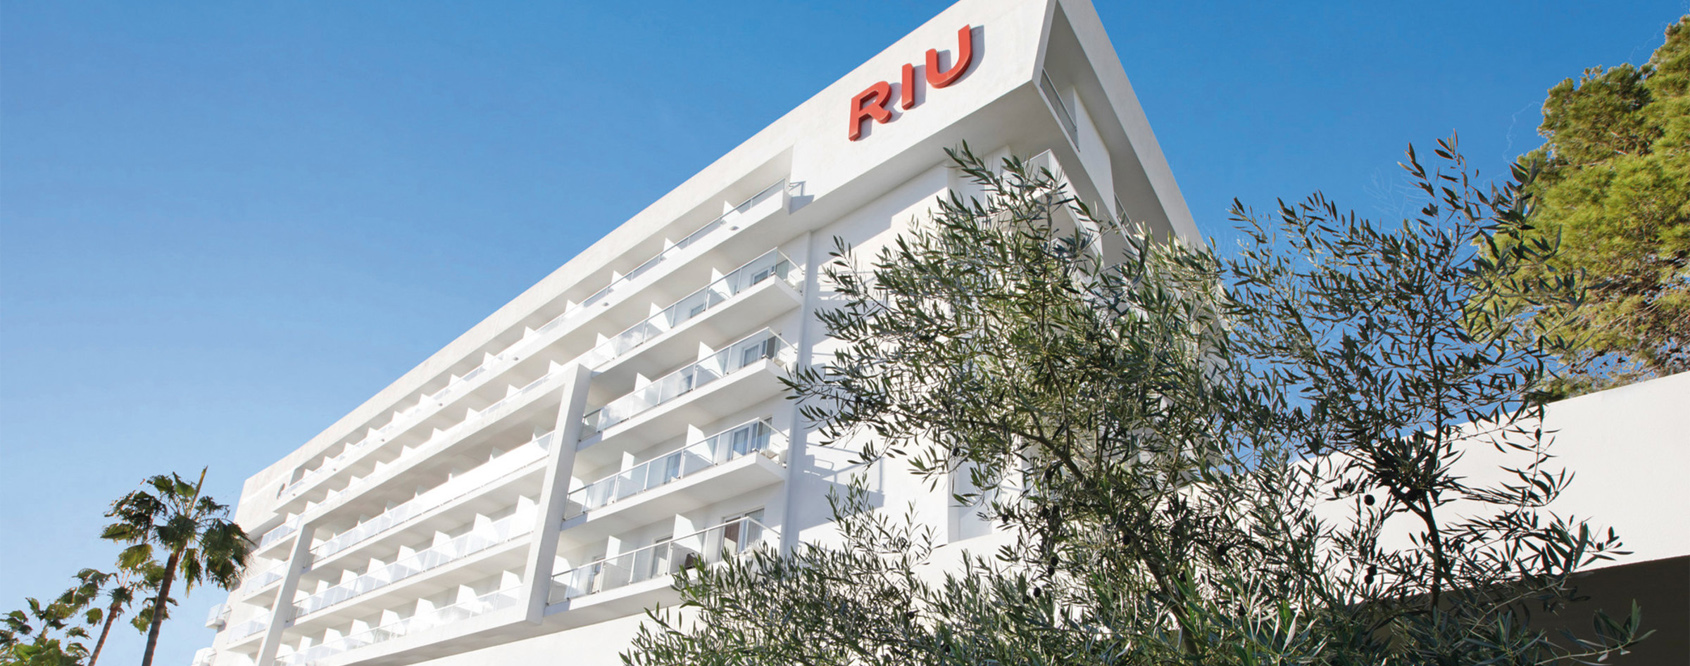 RIU Hotels & Resorts Main Image